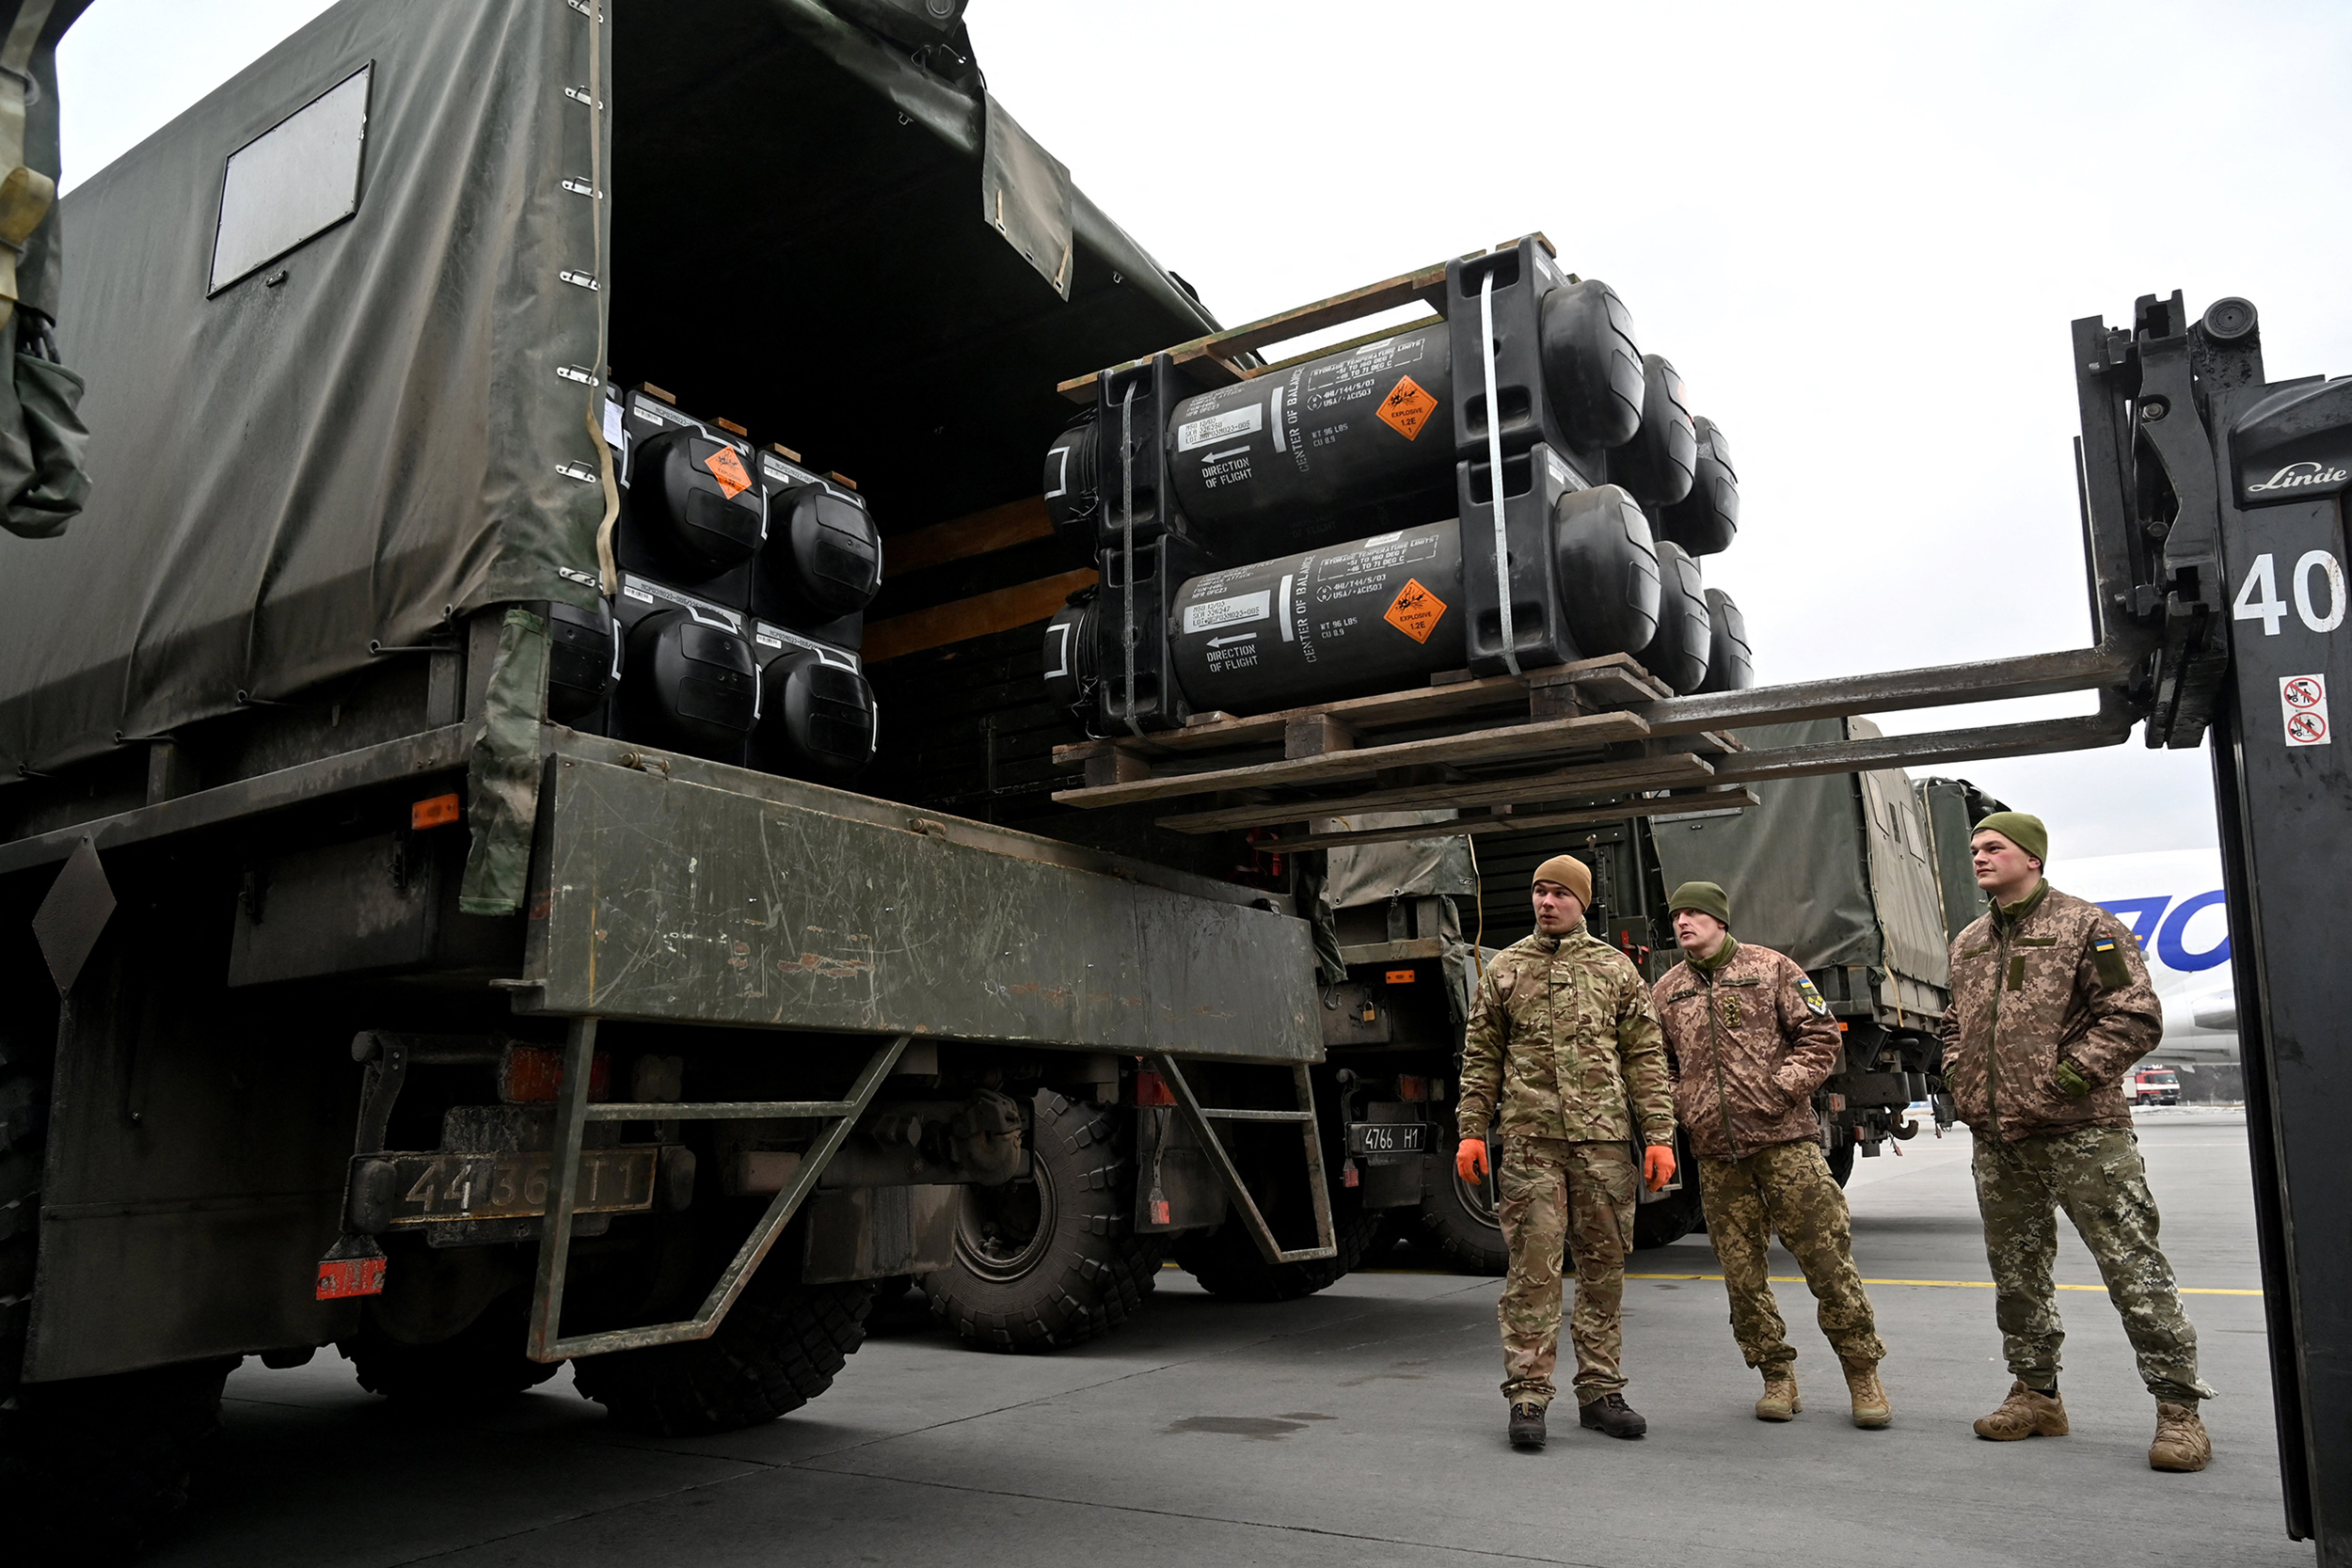 Amunicja HIMARS, radary przeciwbateryjne, środki przeciwdziałania UAV i miny Claymore: Joe Biden podpisuje nowy pakiet pomocy wojskowej dla Ukrainy o wartości 600 000 000 dolarów